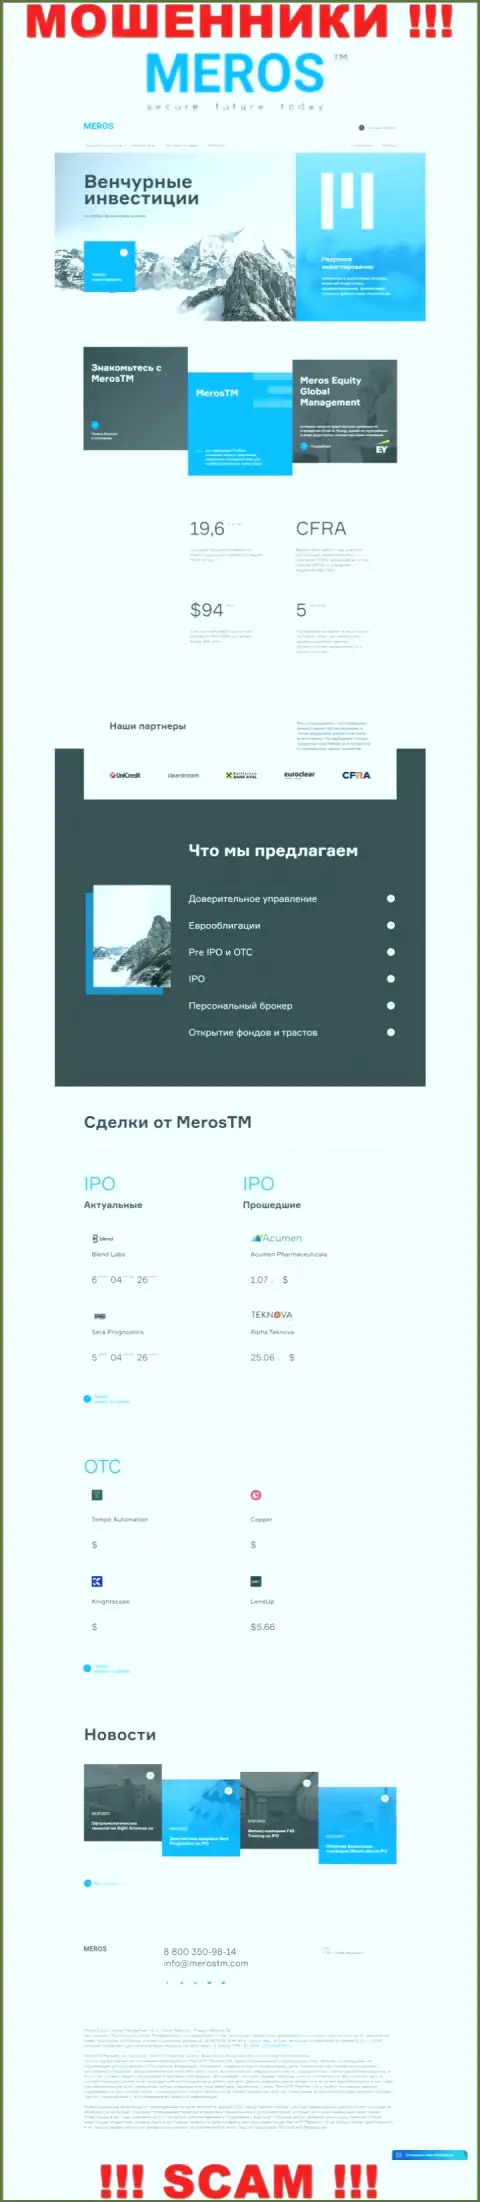 Разбор официального информационного портала мошенников MerosTM Com